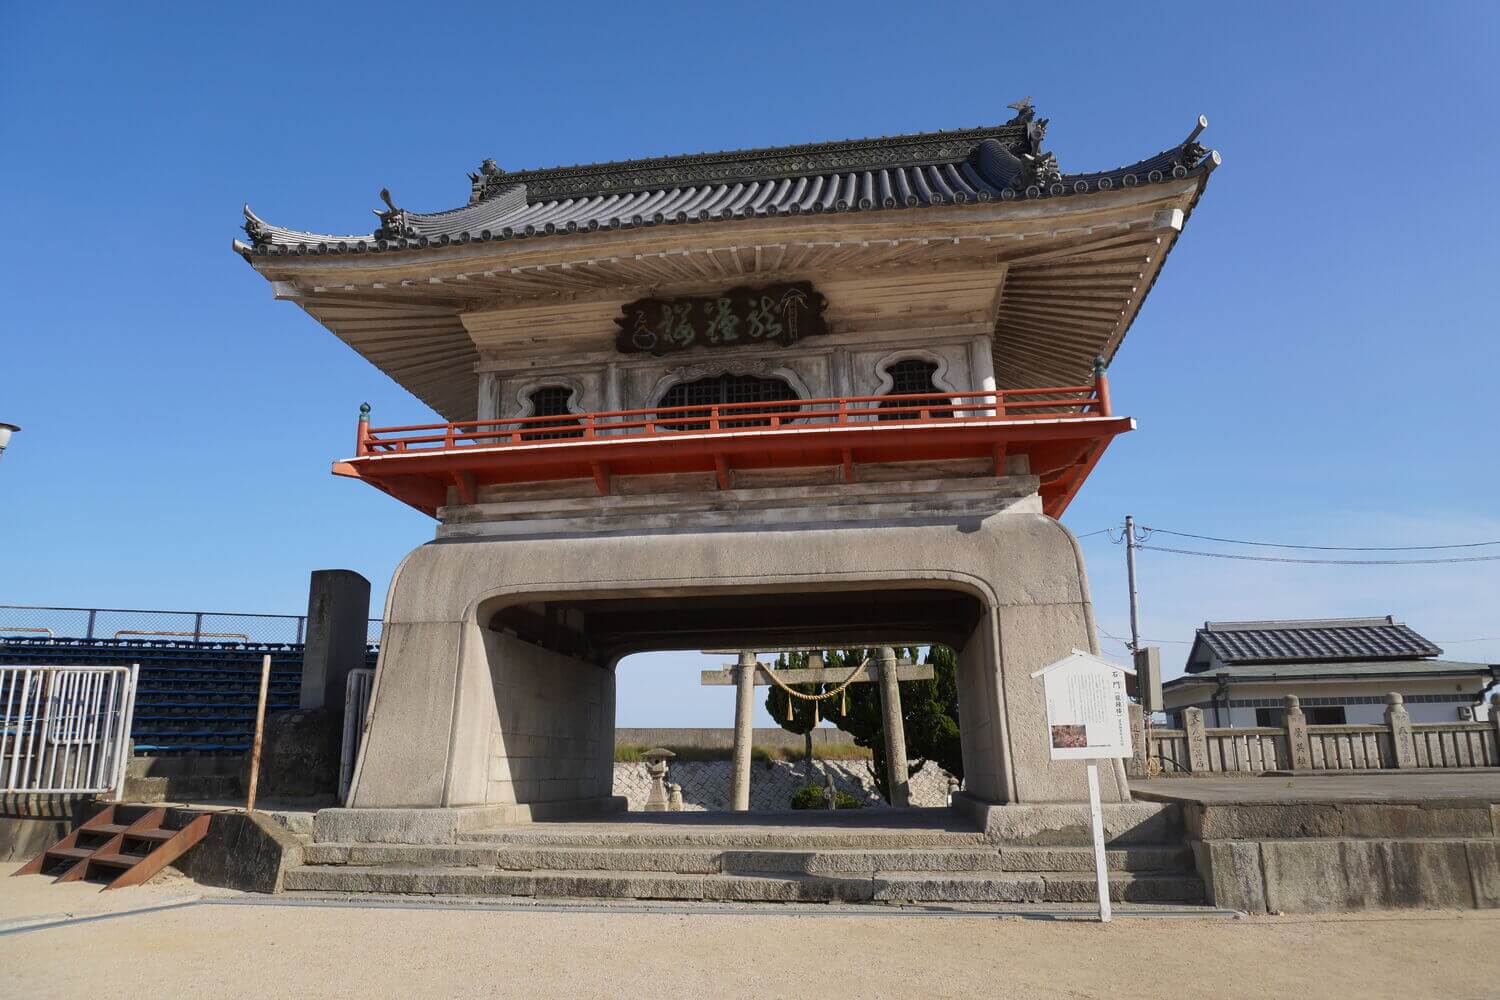 日本三大奇祭の西大寺観音院と五福を授かるレトロな町並みの画像